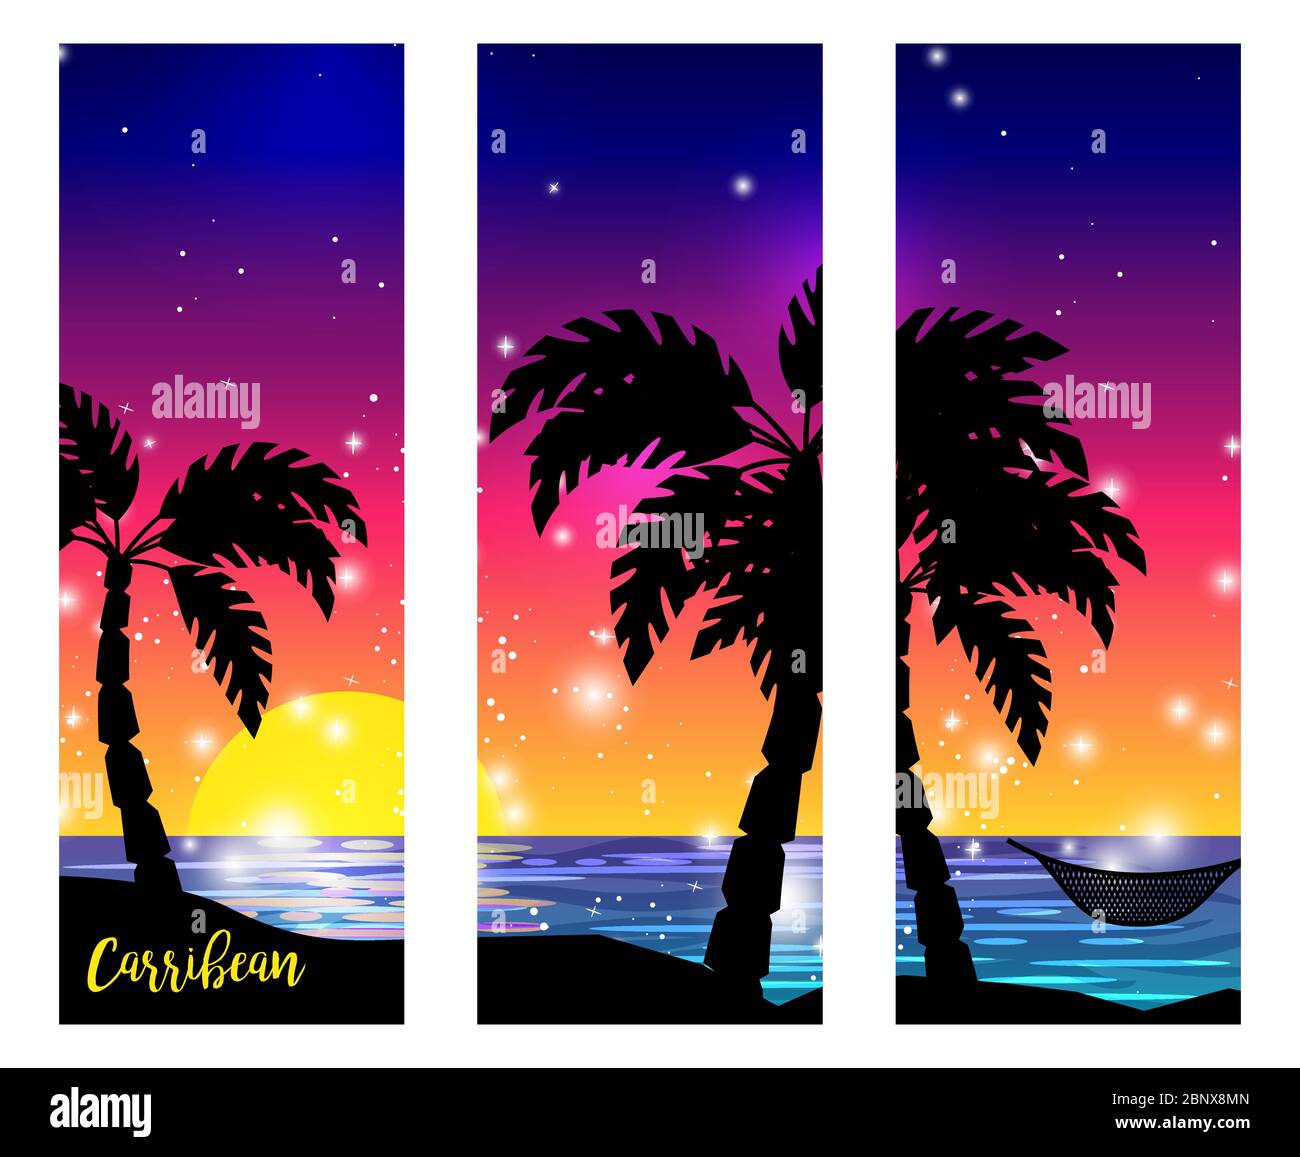 Karibisches Triptychon mit Palmen-Silhouetten und Vektor-Digitalgrafiken zum Sonnenuntergang am Meer Stock Vektor